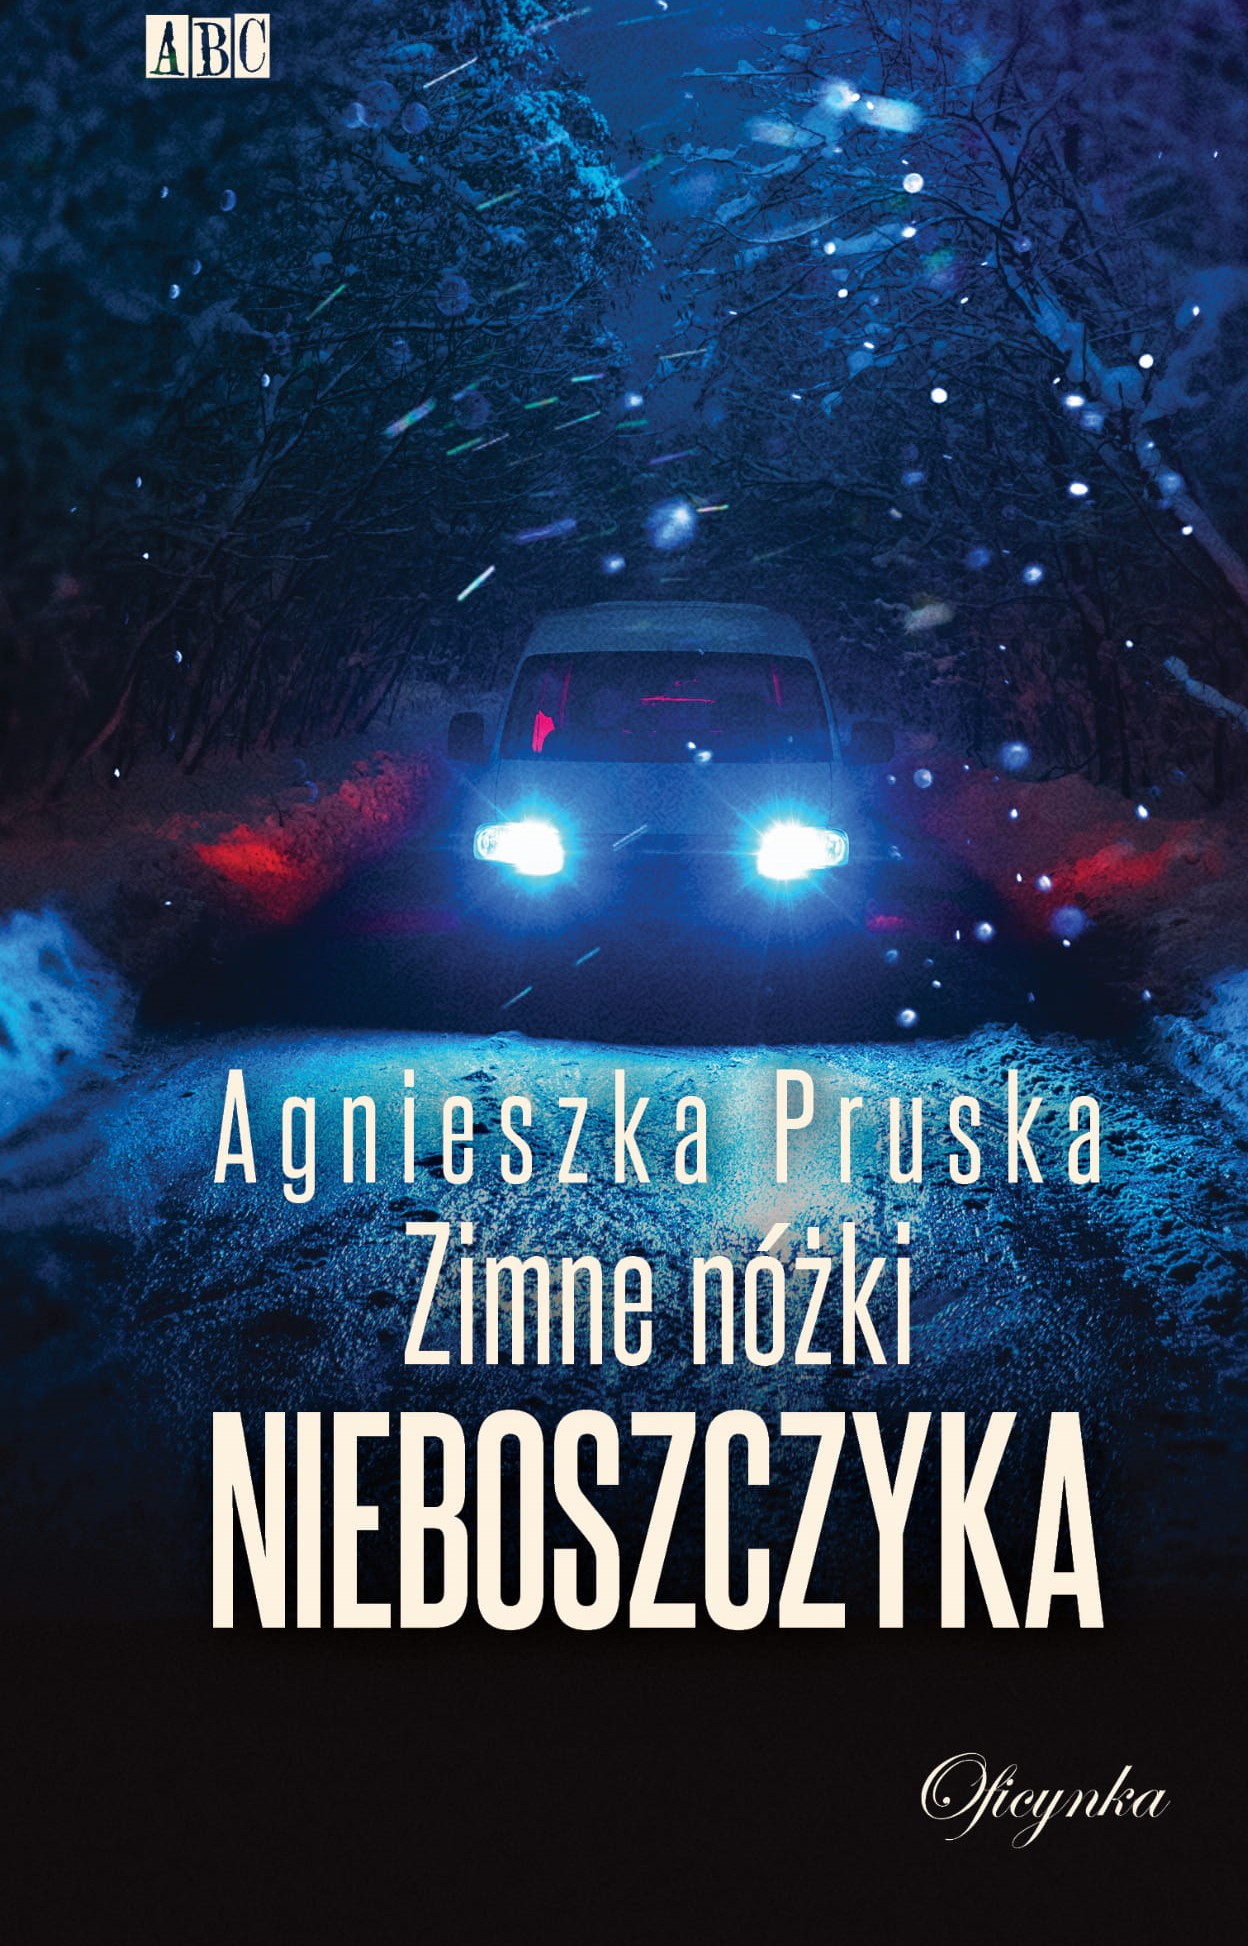 Październikowa premiera w Oficynce: Agnieszka Pruska, " Zimne nóżki nieboszczyka"